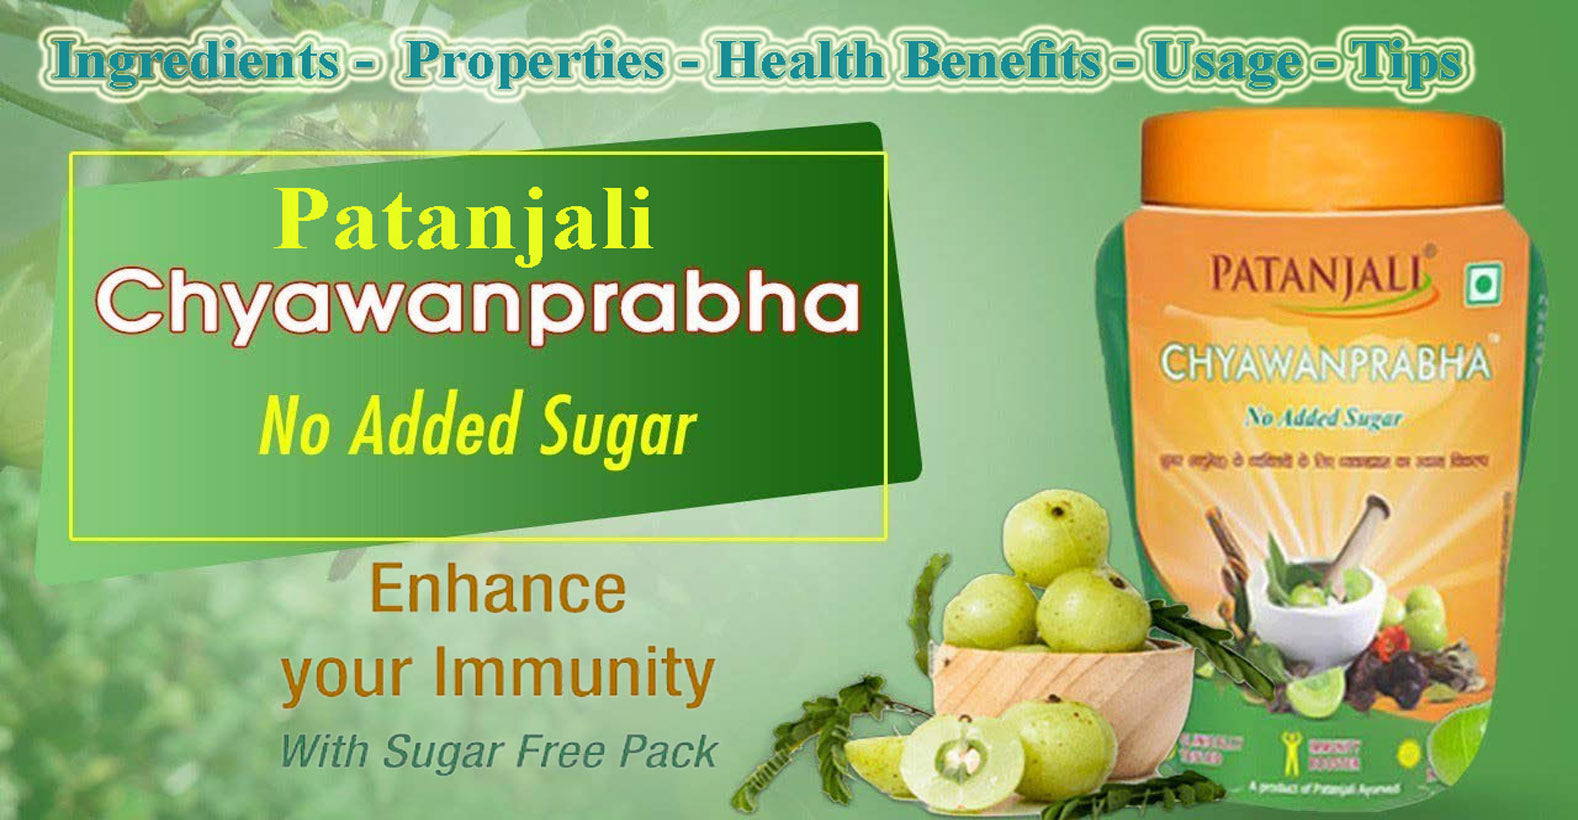 Patanjali Chyawanprabha (Sugar-Free) - Ingredients, Properties, Health Benefits, Usage, Tips